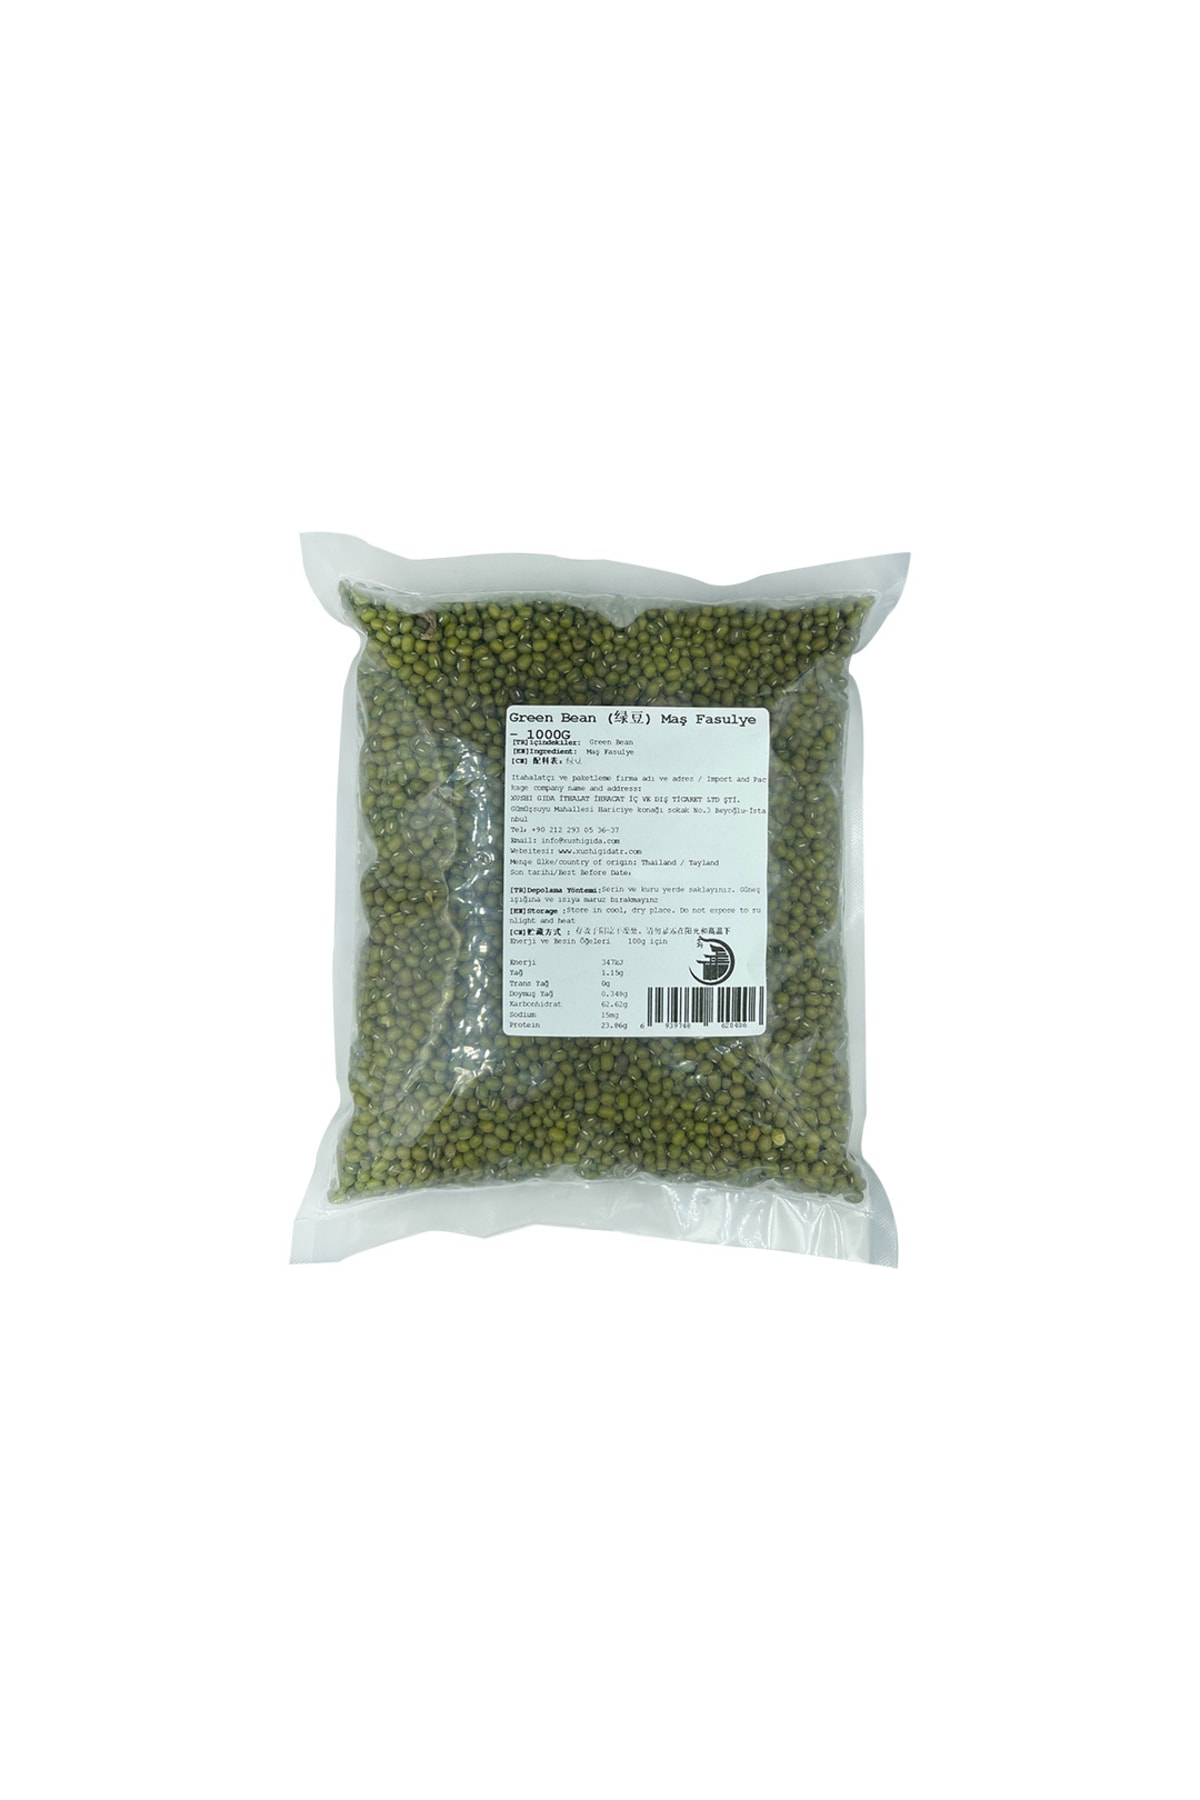 XUSHI GIDA Yeşil Soya ( Green Bean) - 1000g